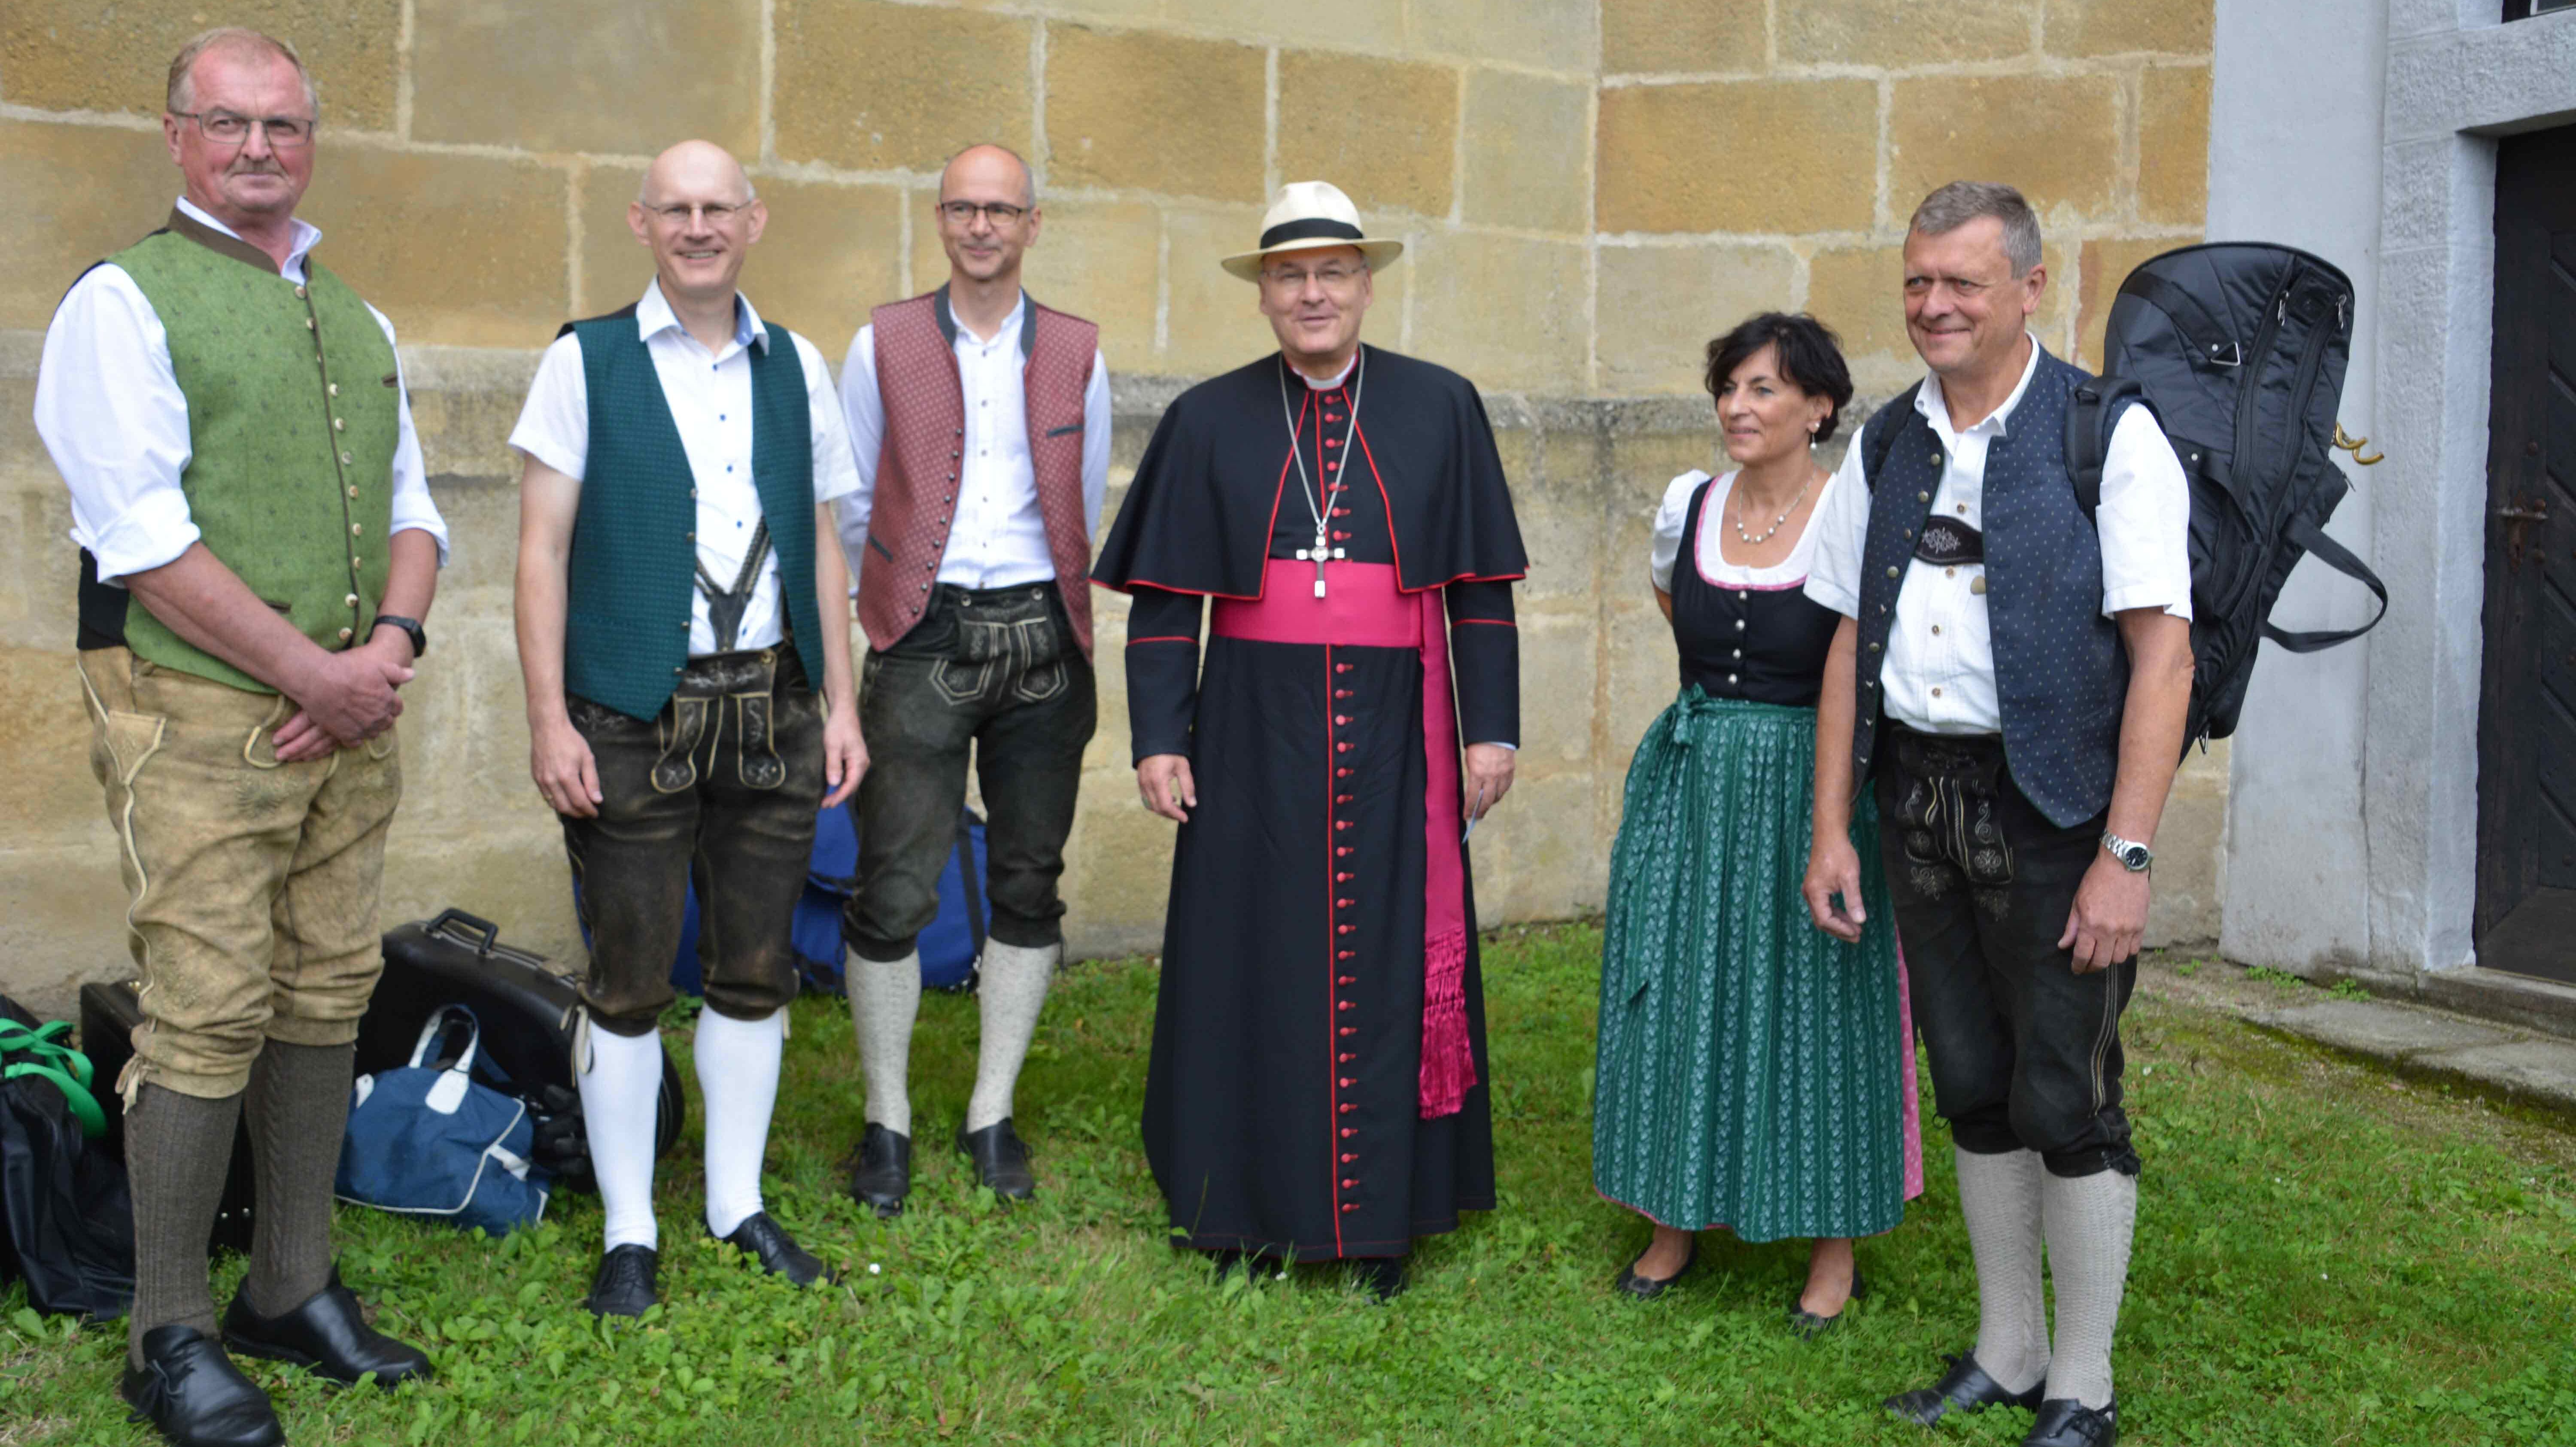 Bischof Dr. Rudolf Voderholzer mit den Mitgliedern der Kapelle „Bloß Blech“, die ein paar geistliche Stücke beim Gottesdienst spielte.